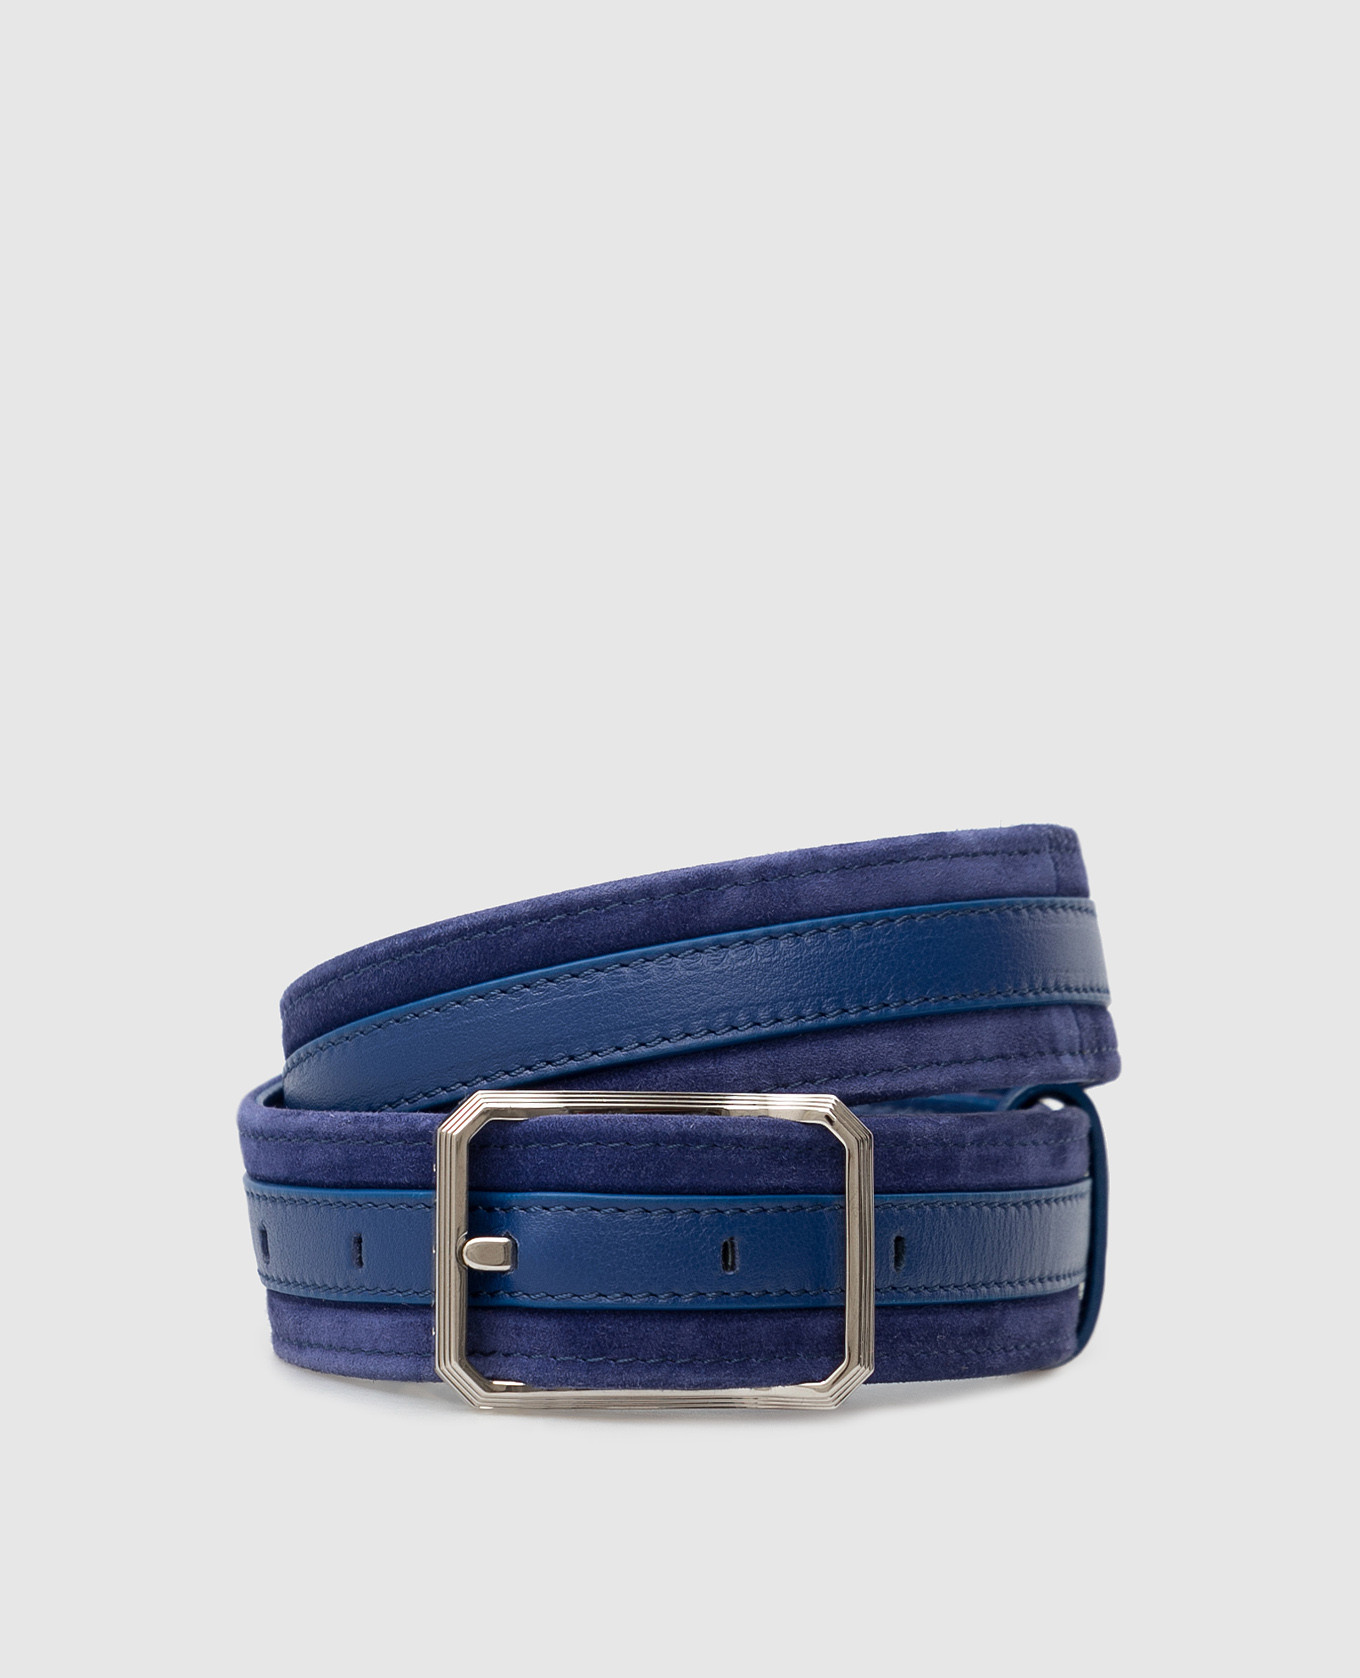 Children's blue suede belt